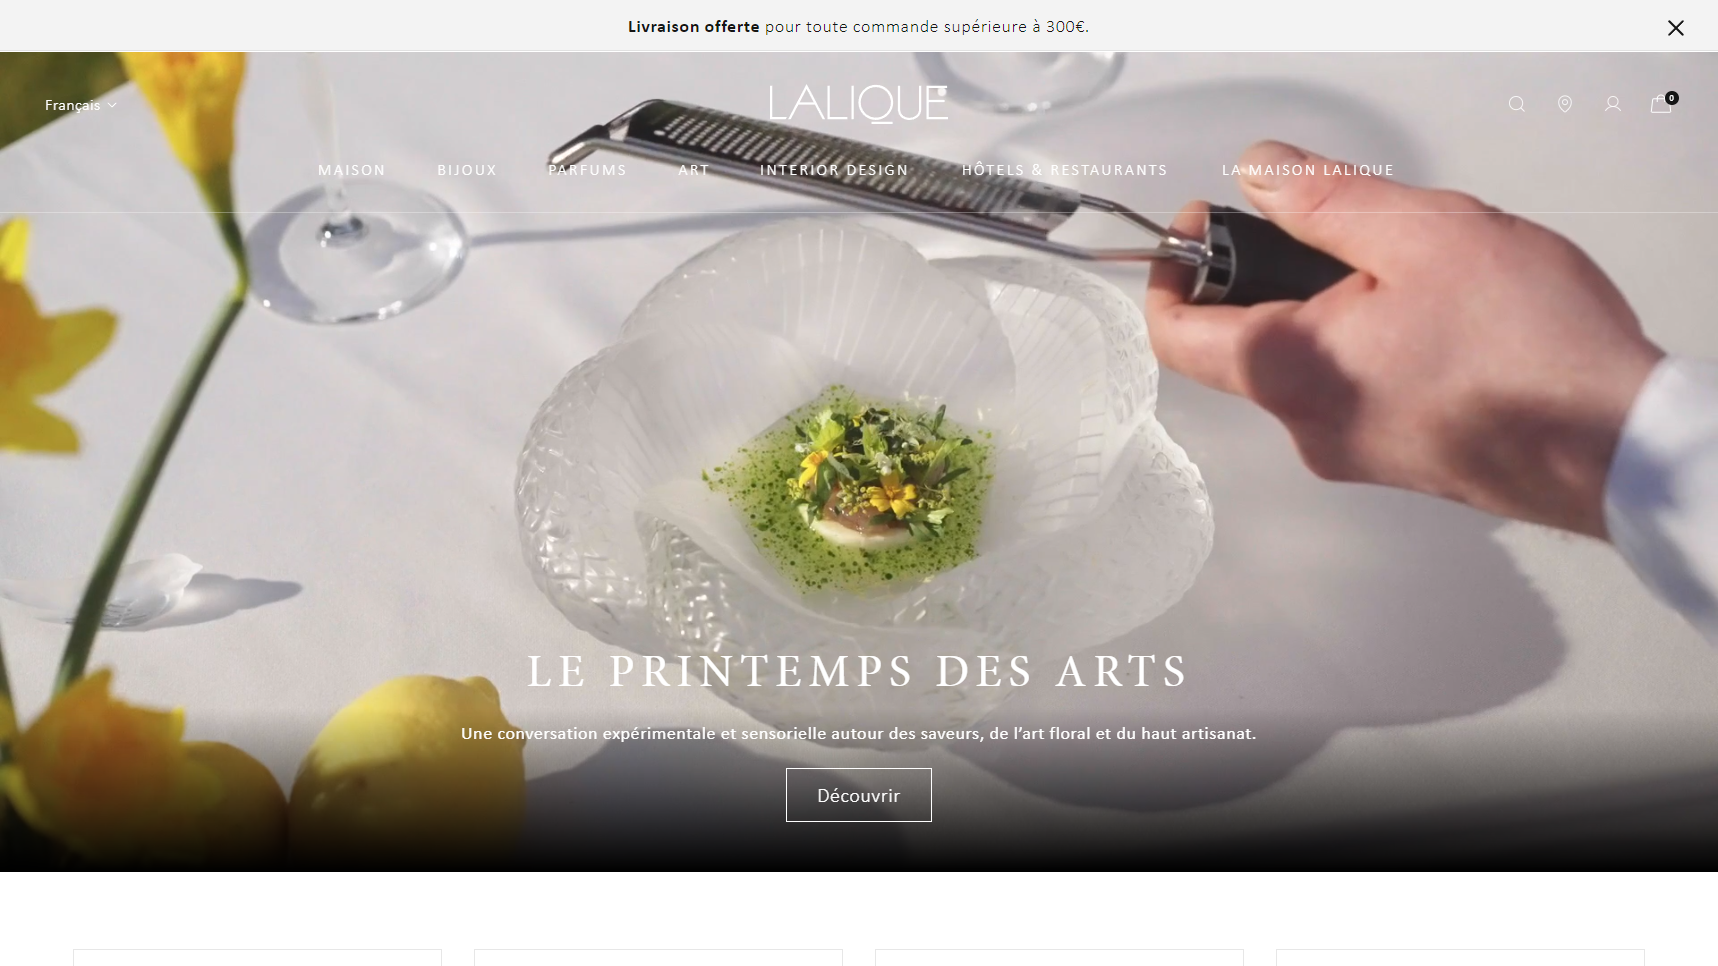 Lalique - Crystal Glassware Manufacturer